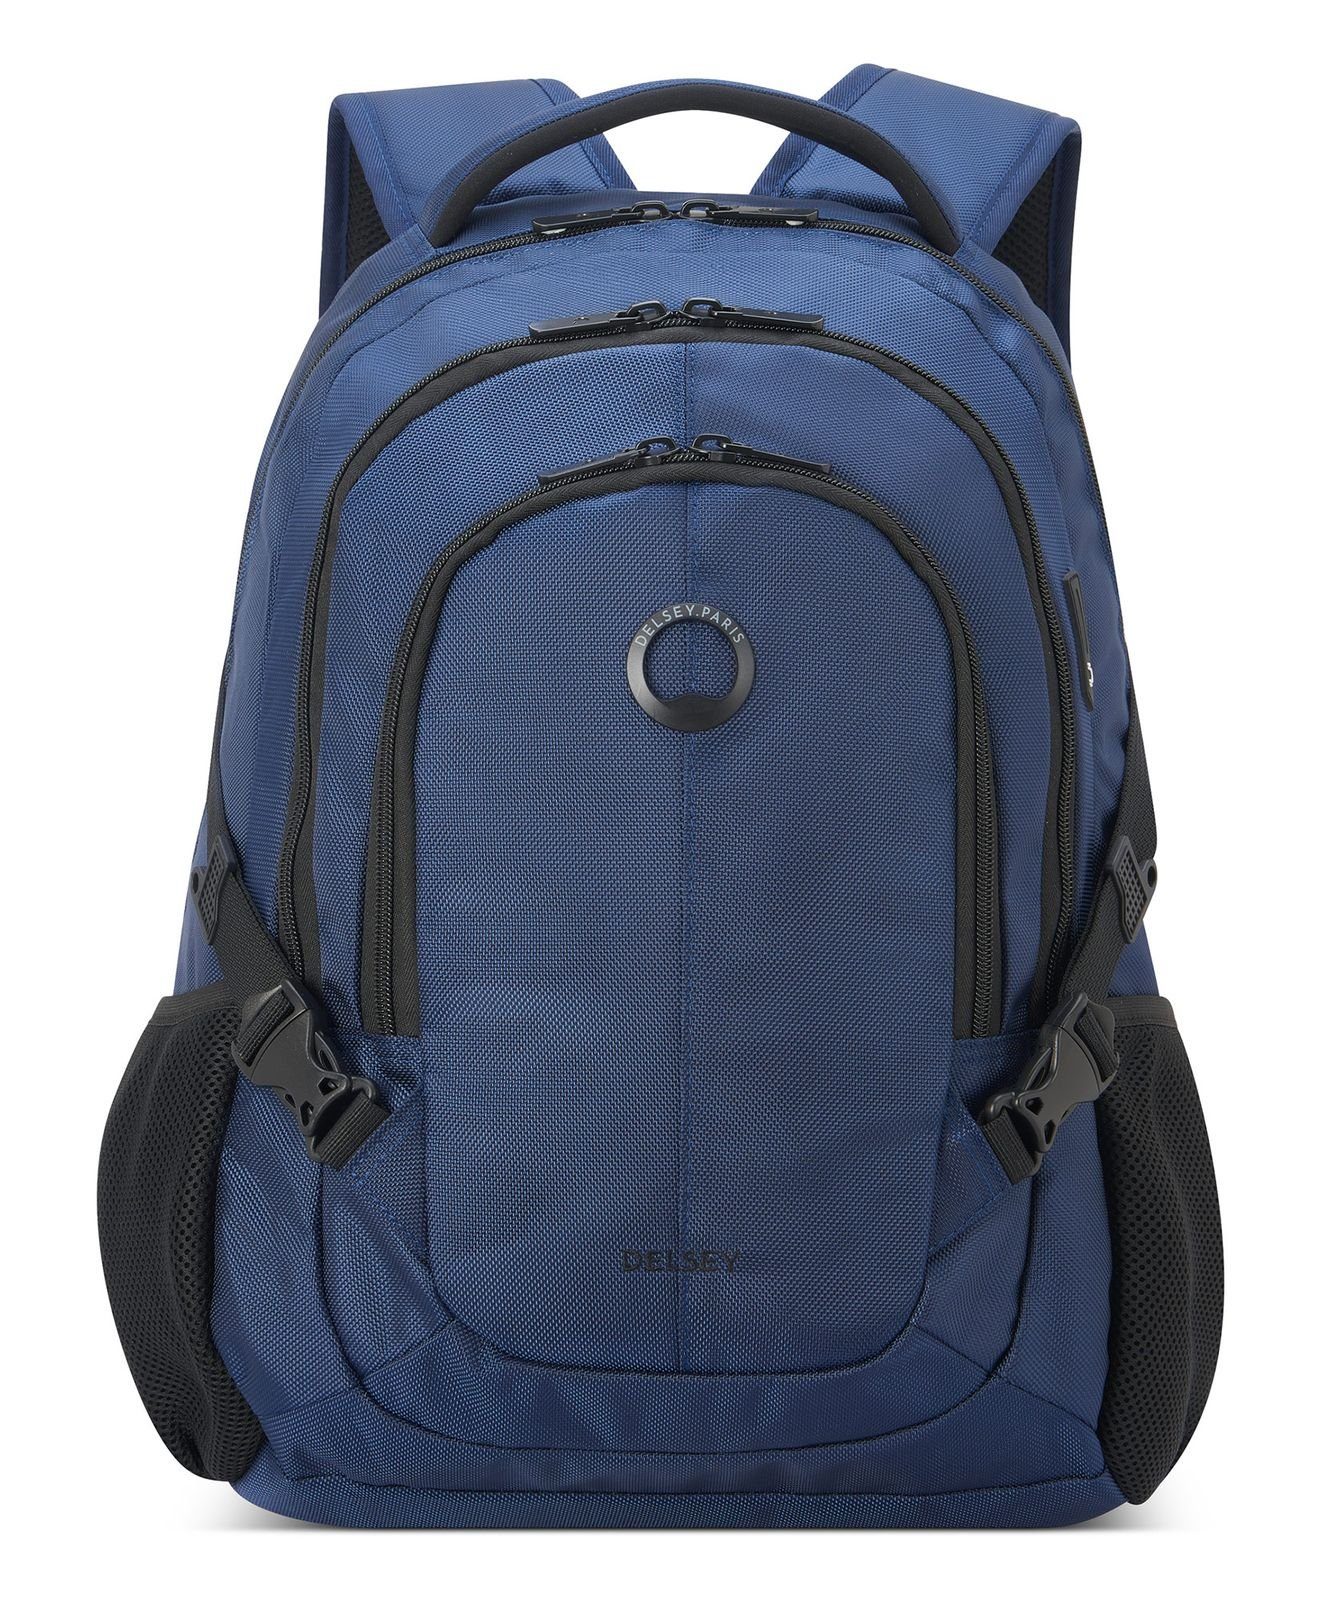 Delsey Rucksack Element Backpacks Navy Blue